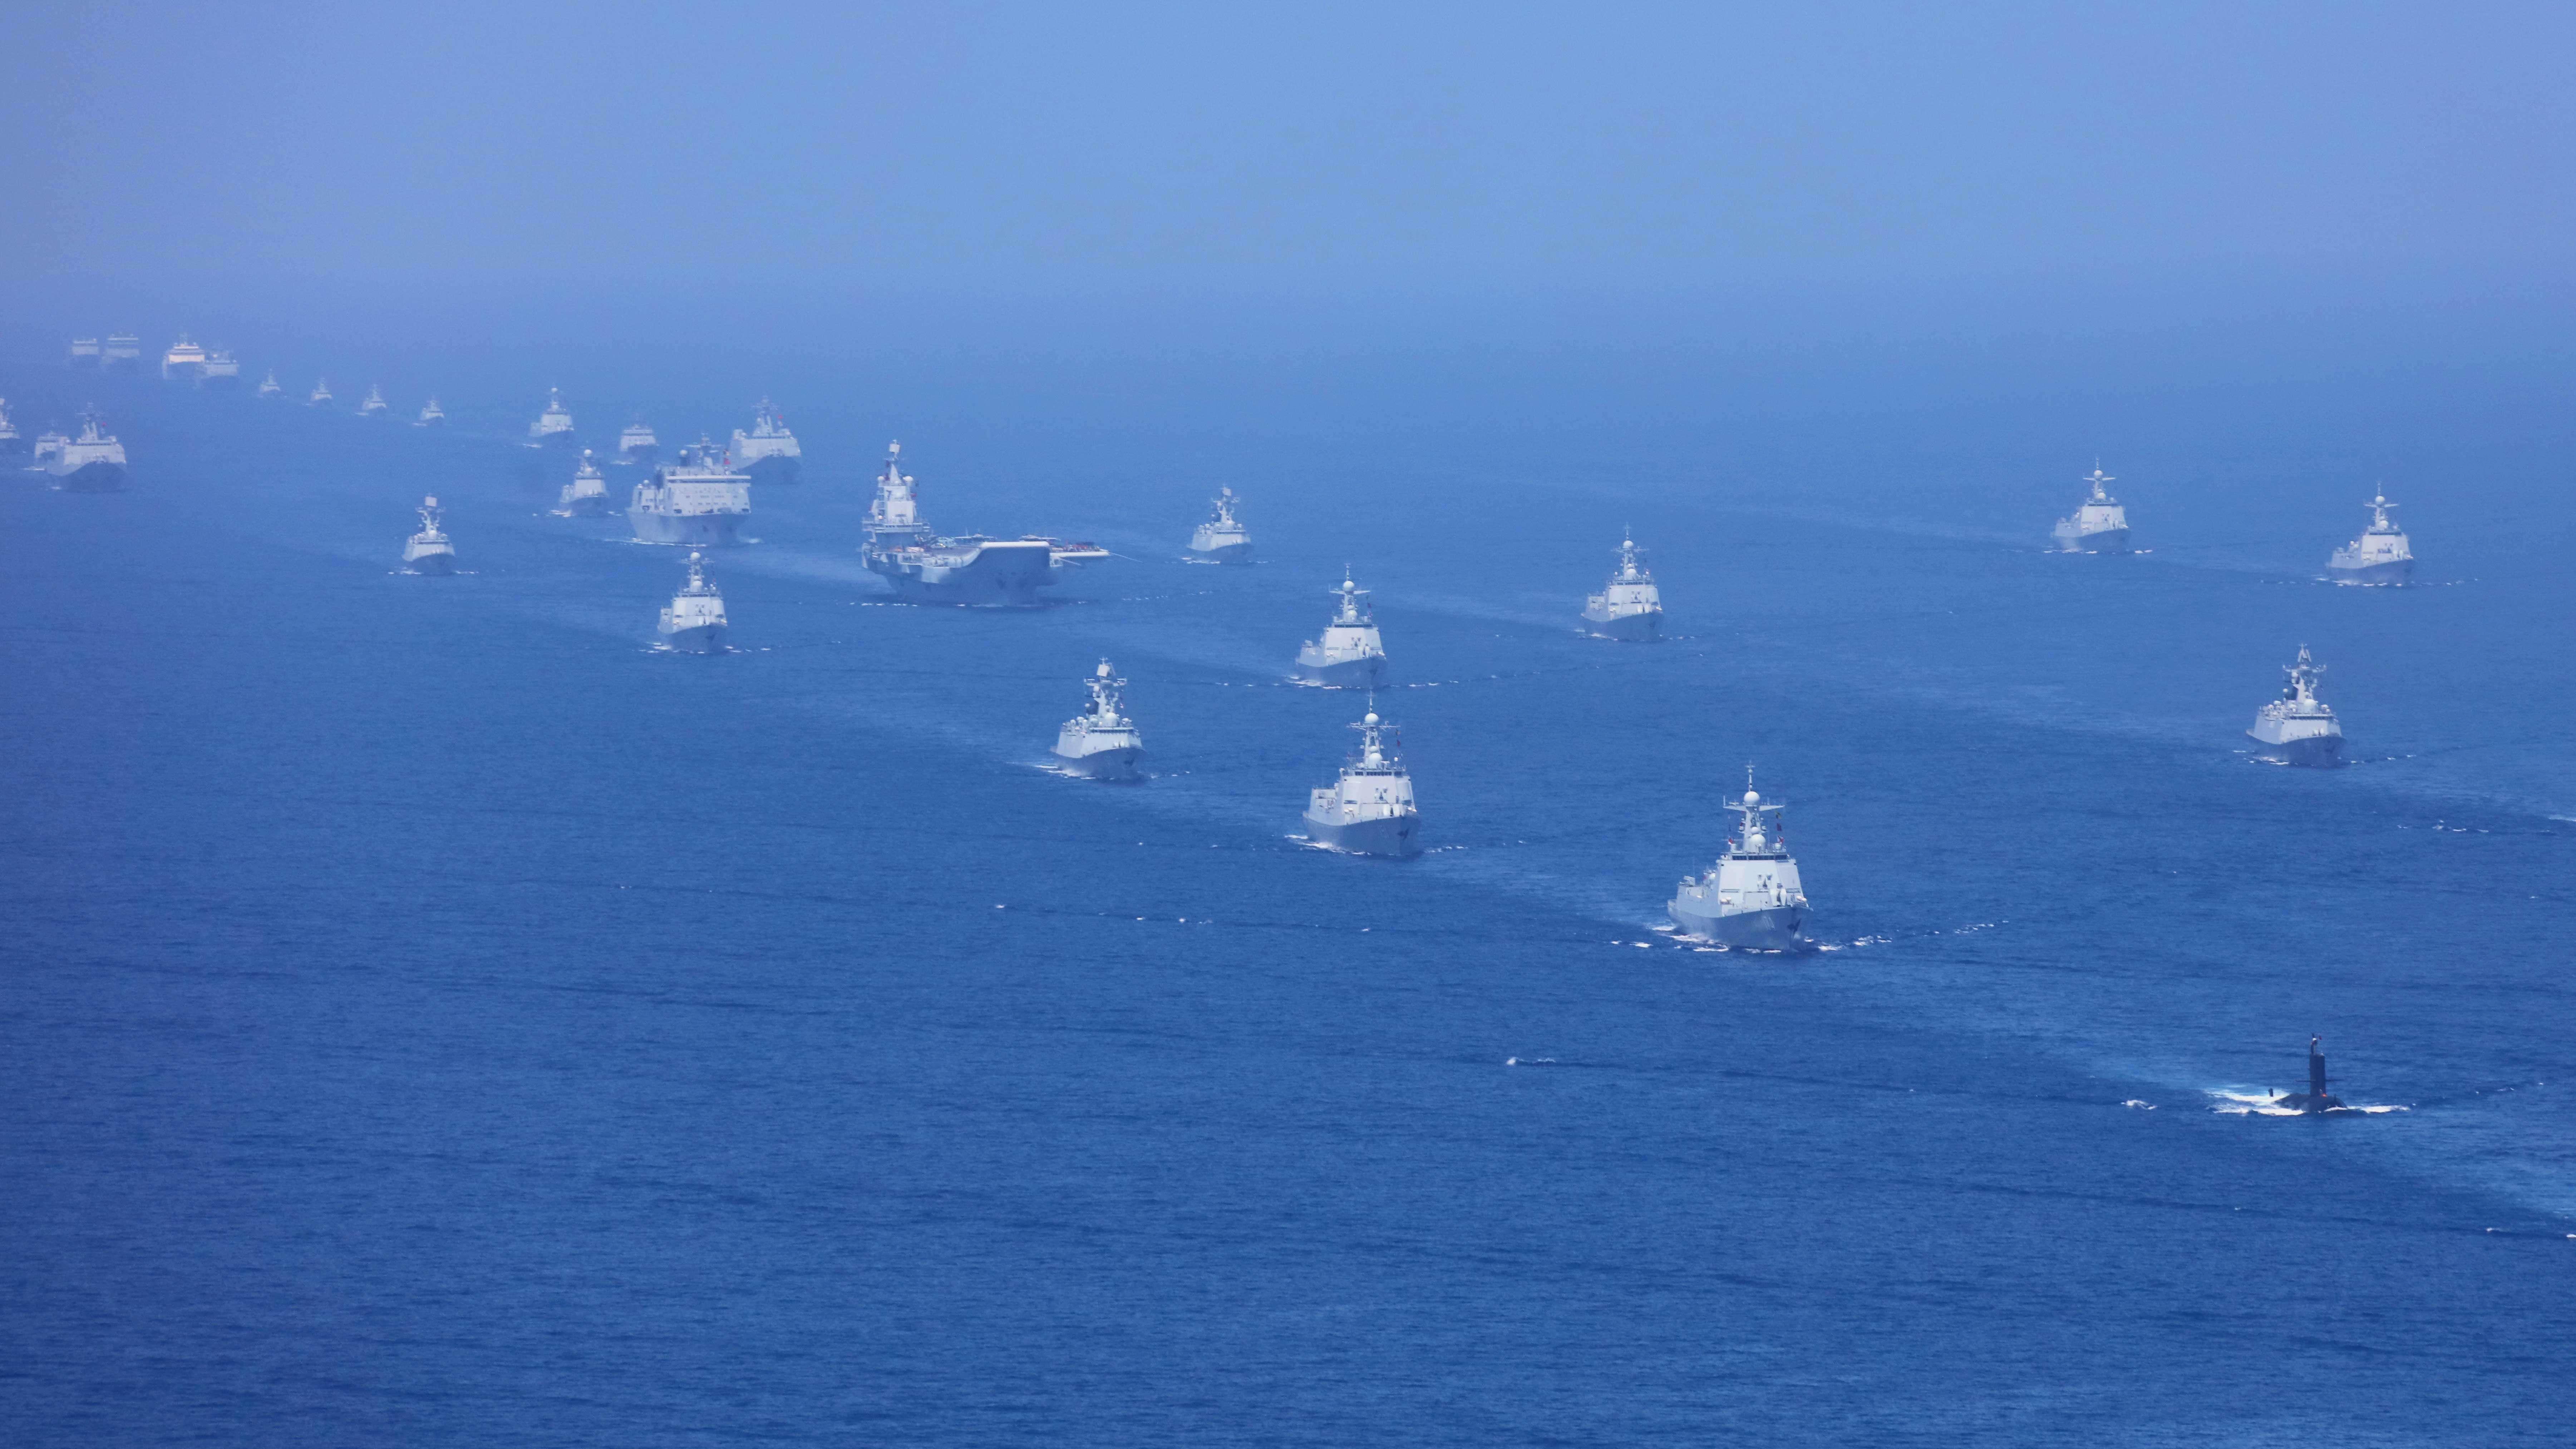 中国海军六大舰队图片